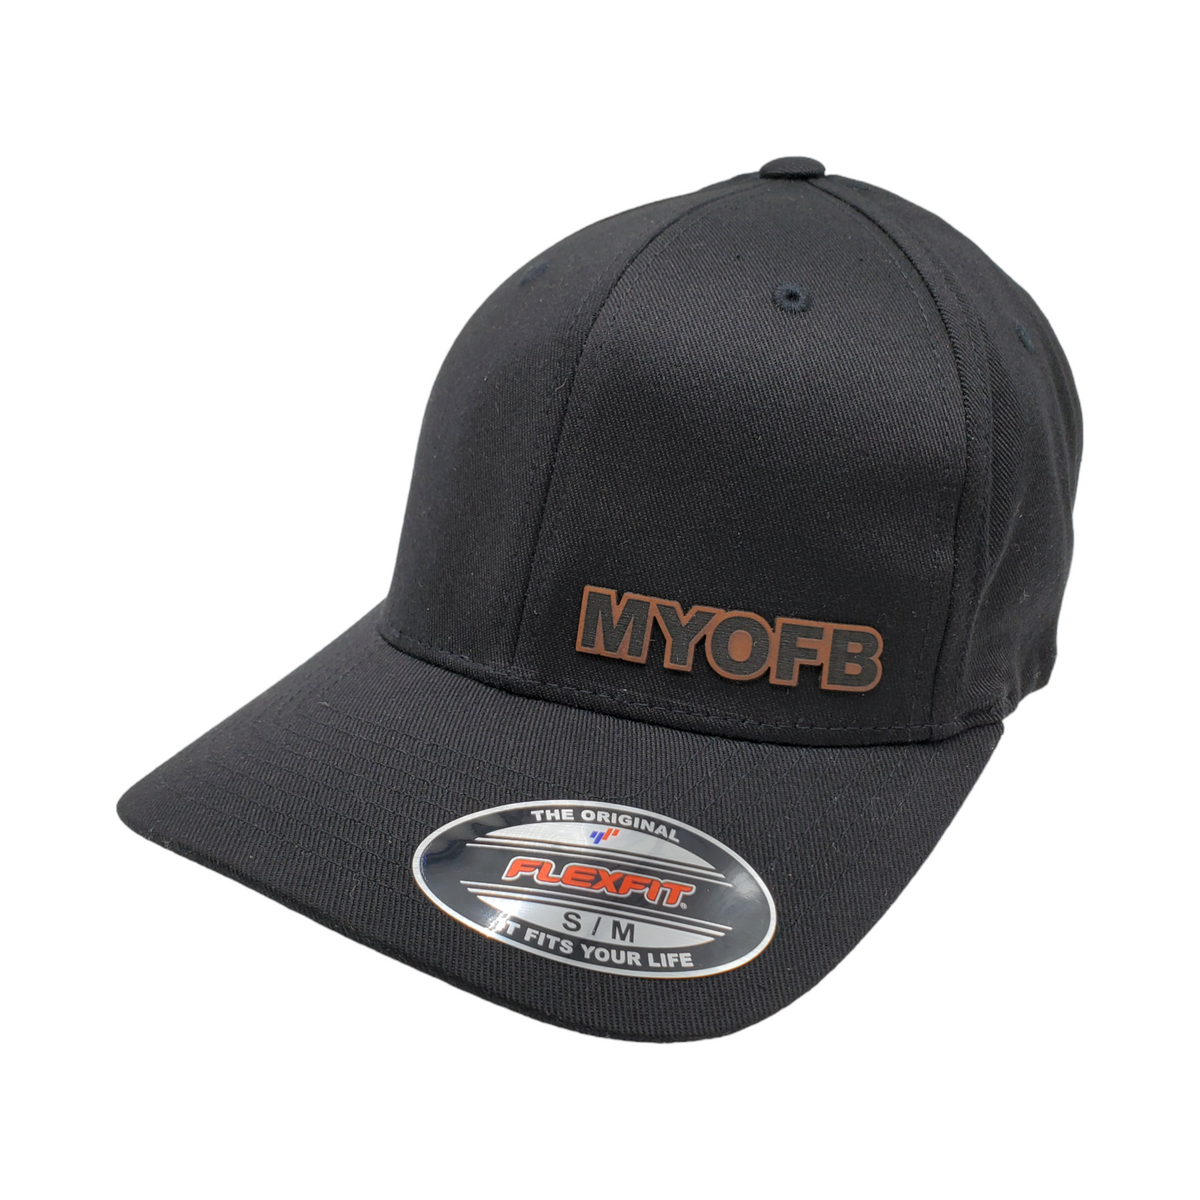 MYOFB FLEXFIT Patch Hat